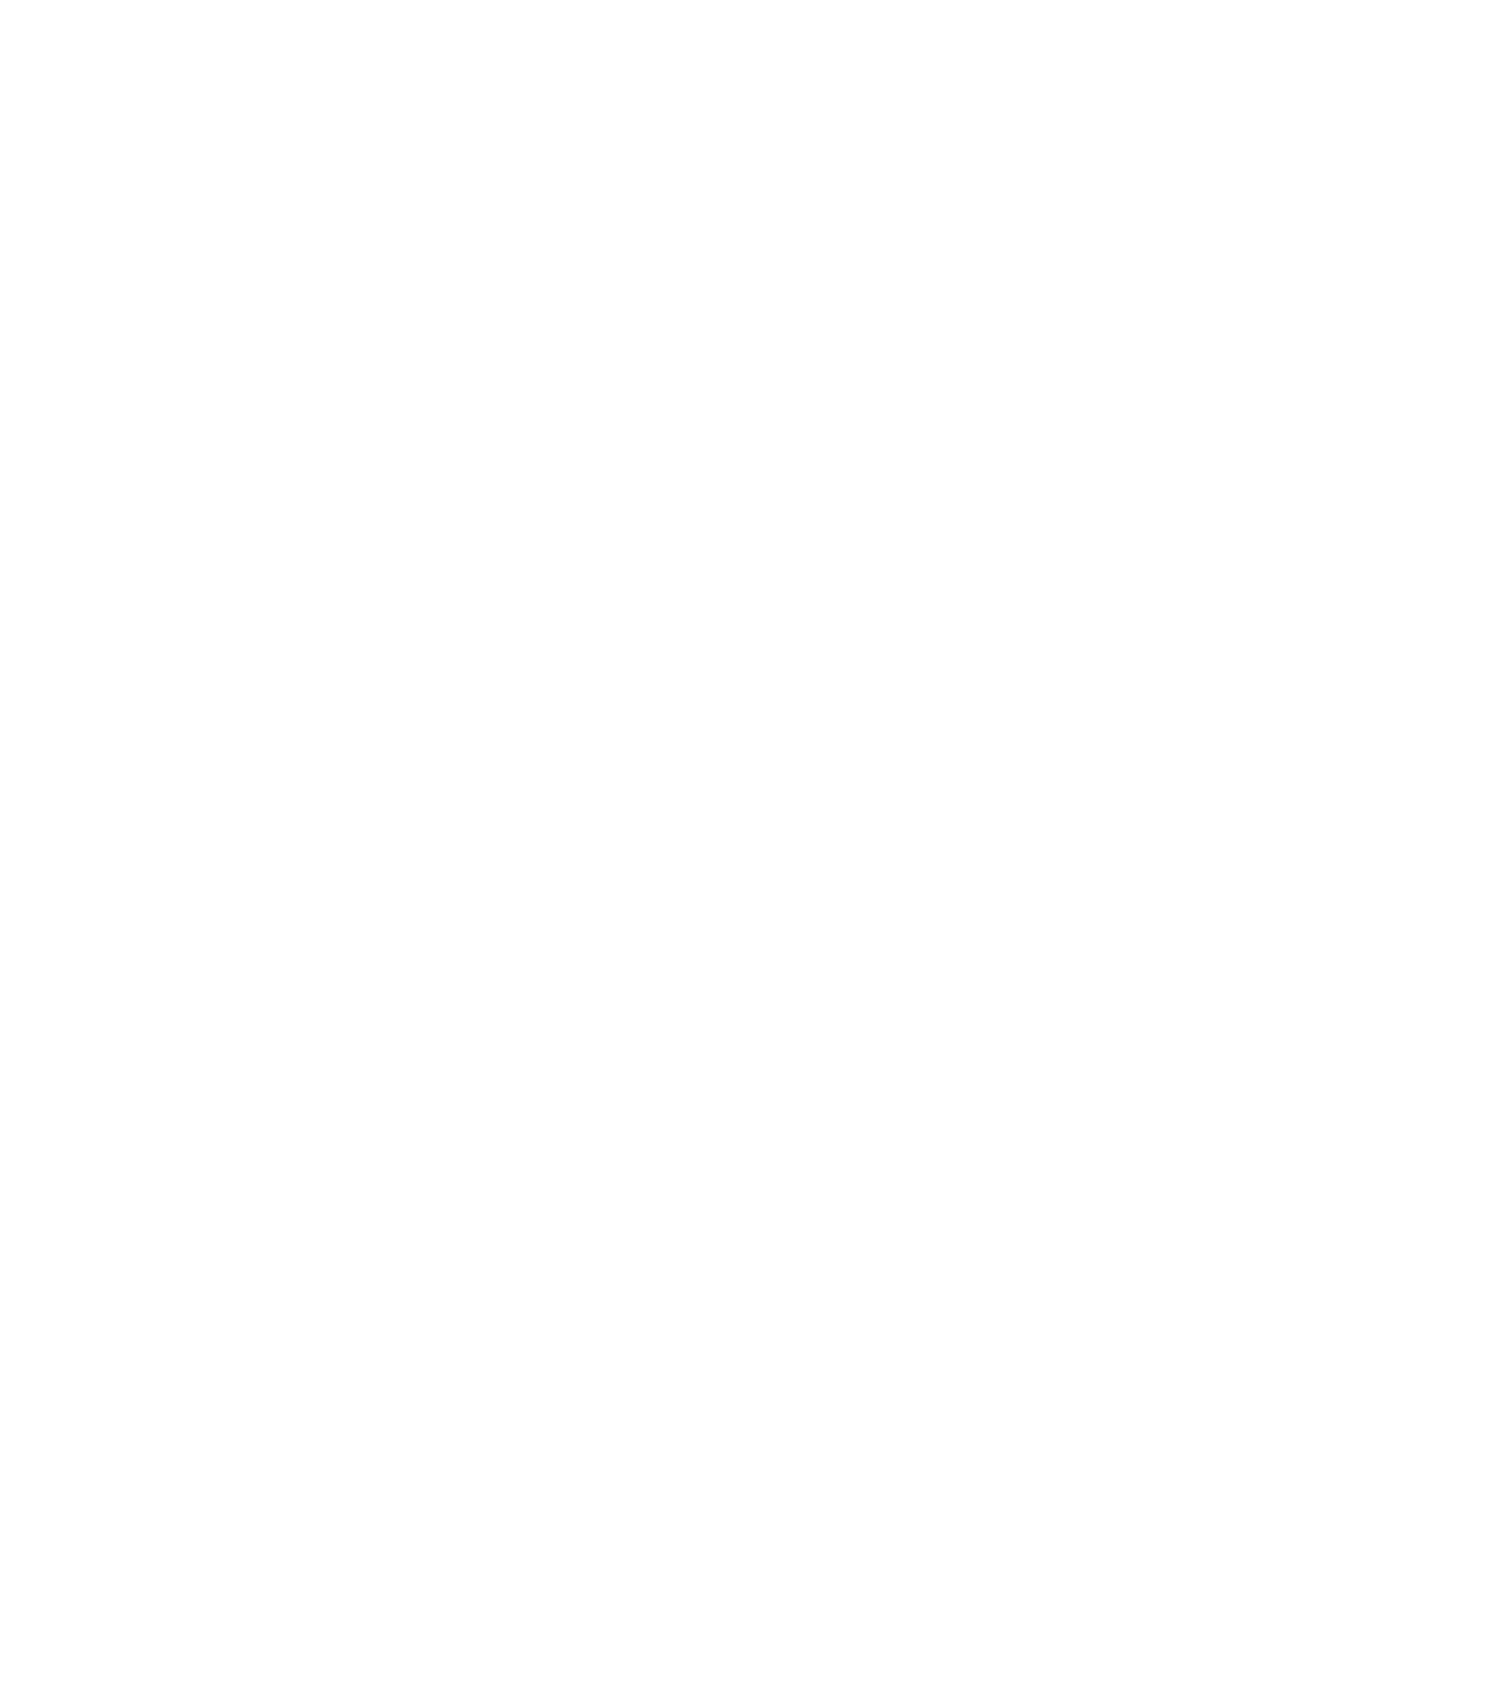 Heartwood Institute